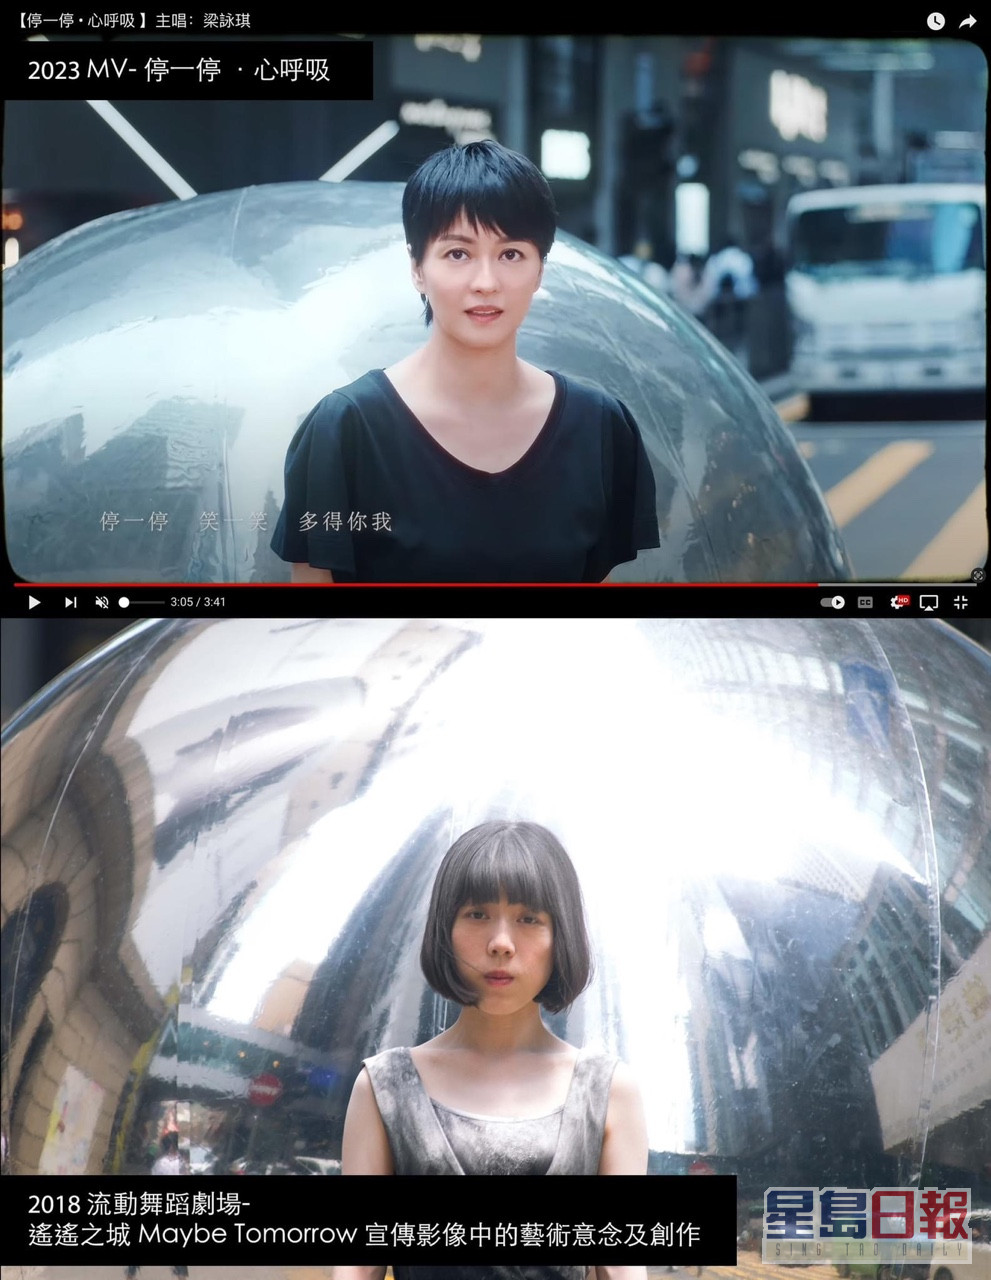 由梁咏琪主唱、袁剑伟执导的歌曲《停一停·心呼吸》MV被指涉嫌抄袭 2018年流动舞蹈剧场作品《遥遥之城 Maybe Tomorrow 》。